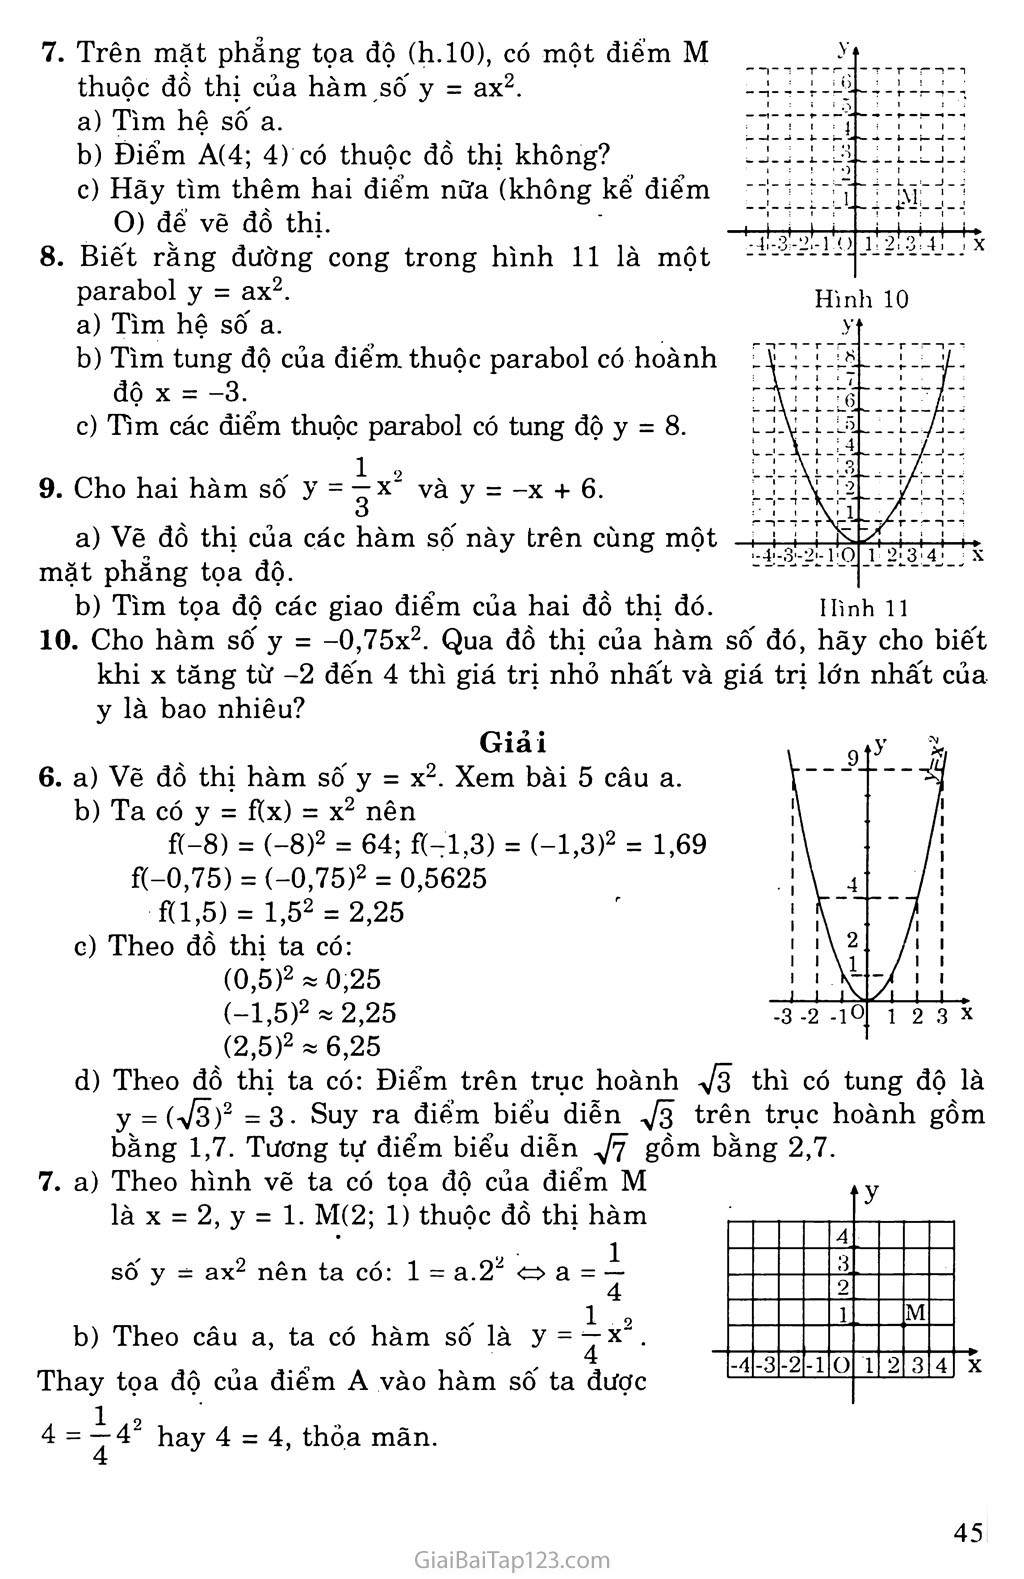 Bài 2. Đồ thị hàm số y = ax2 (a khác 0) trang 4